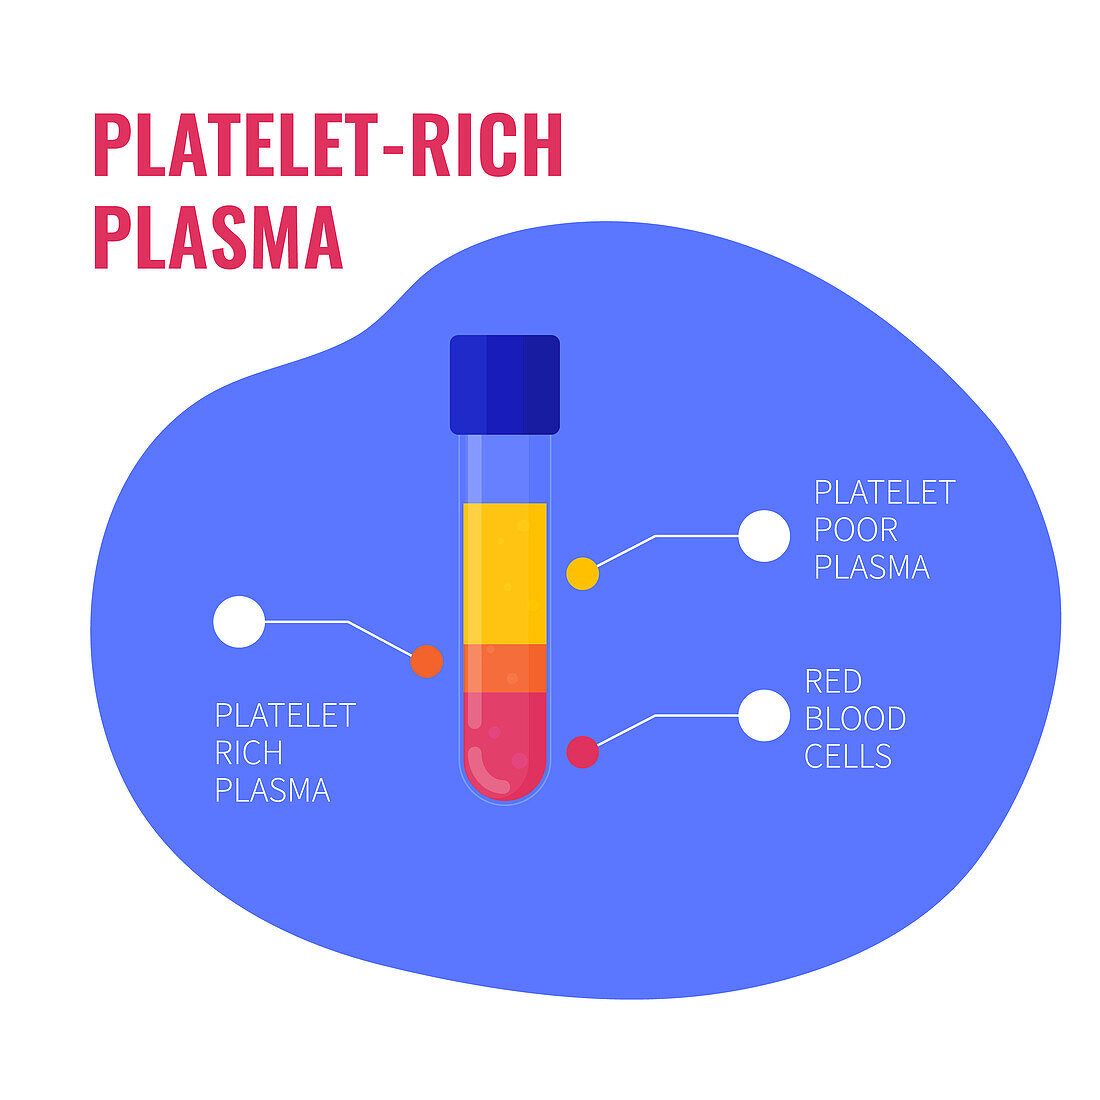 Platelet-rich plasma composition, conceptual illustration